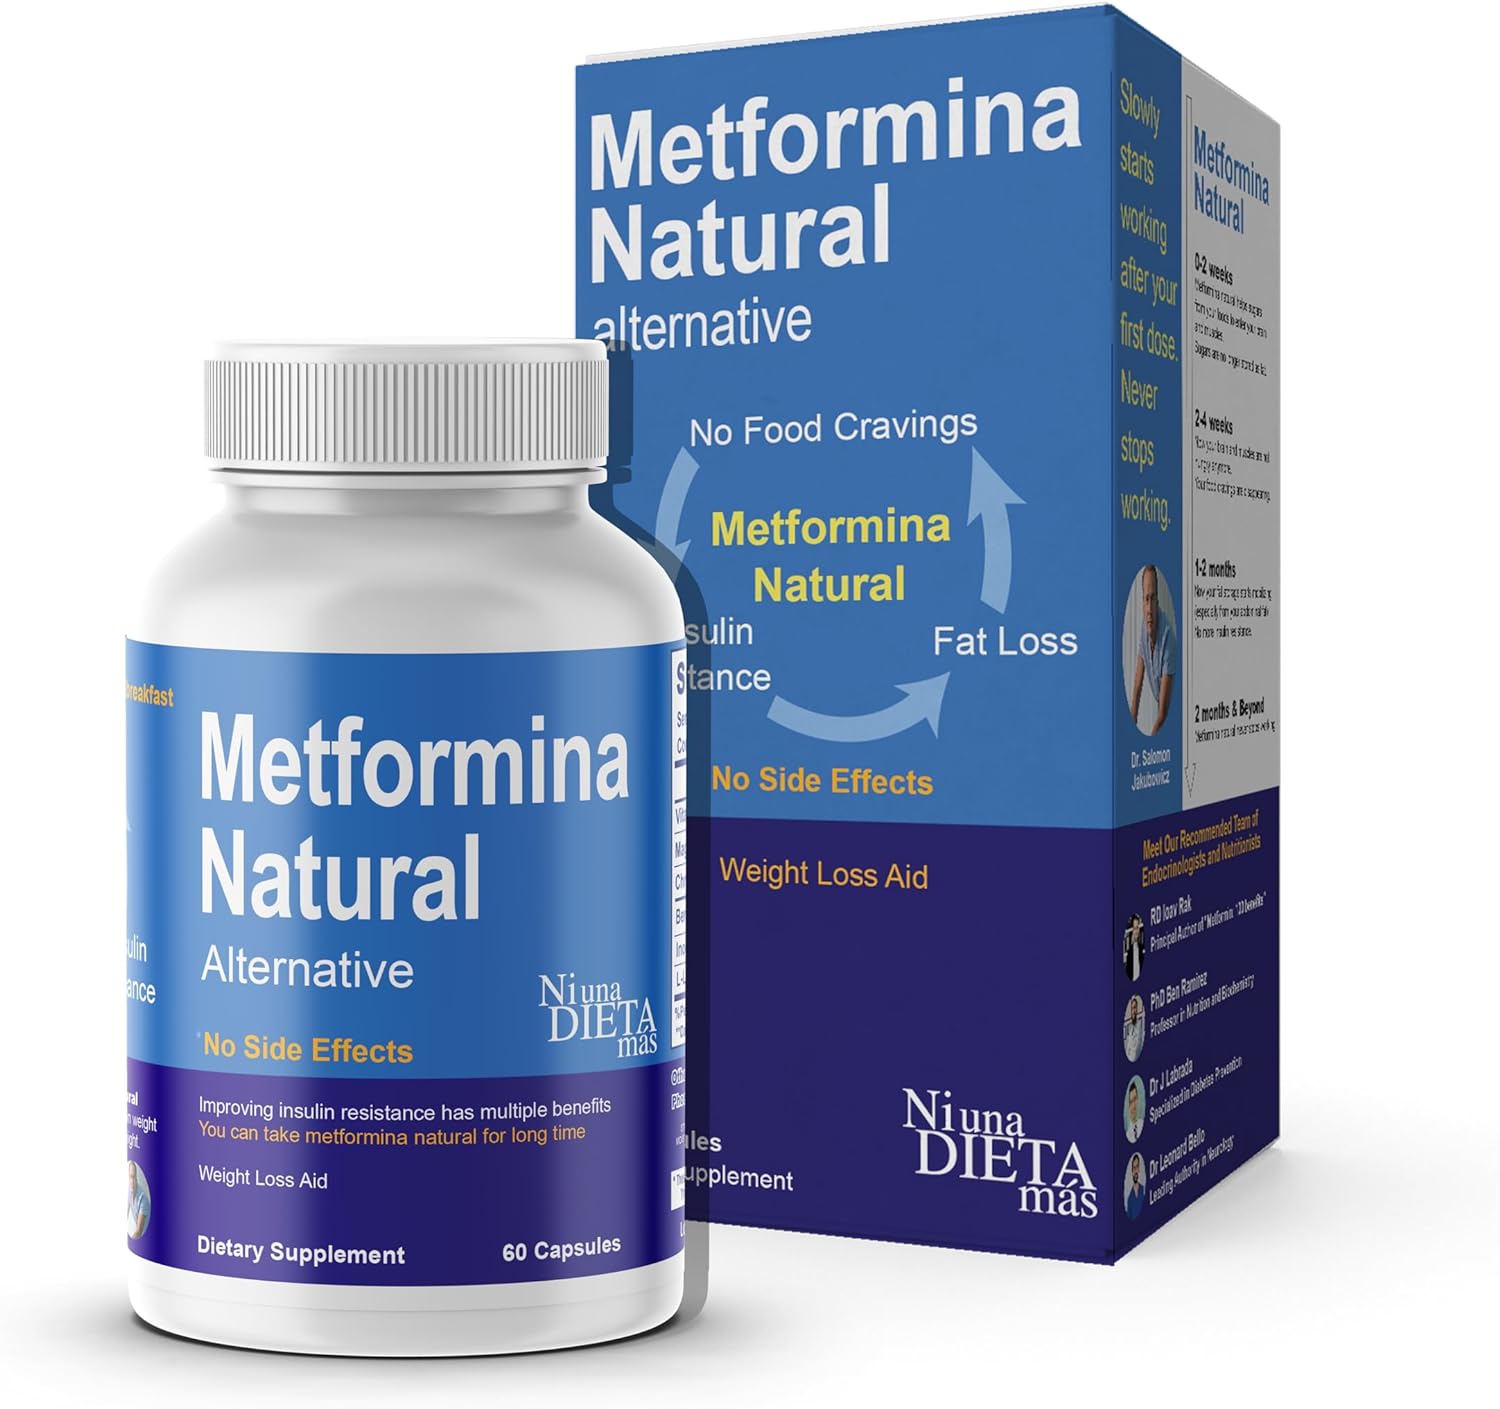 METFORMINA NATURAL - Fat  Glucose Metabolism Support - Dr Salomon (60 Capsules)